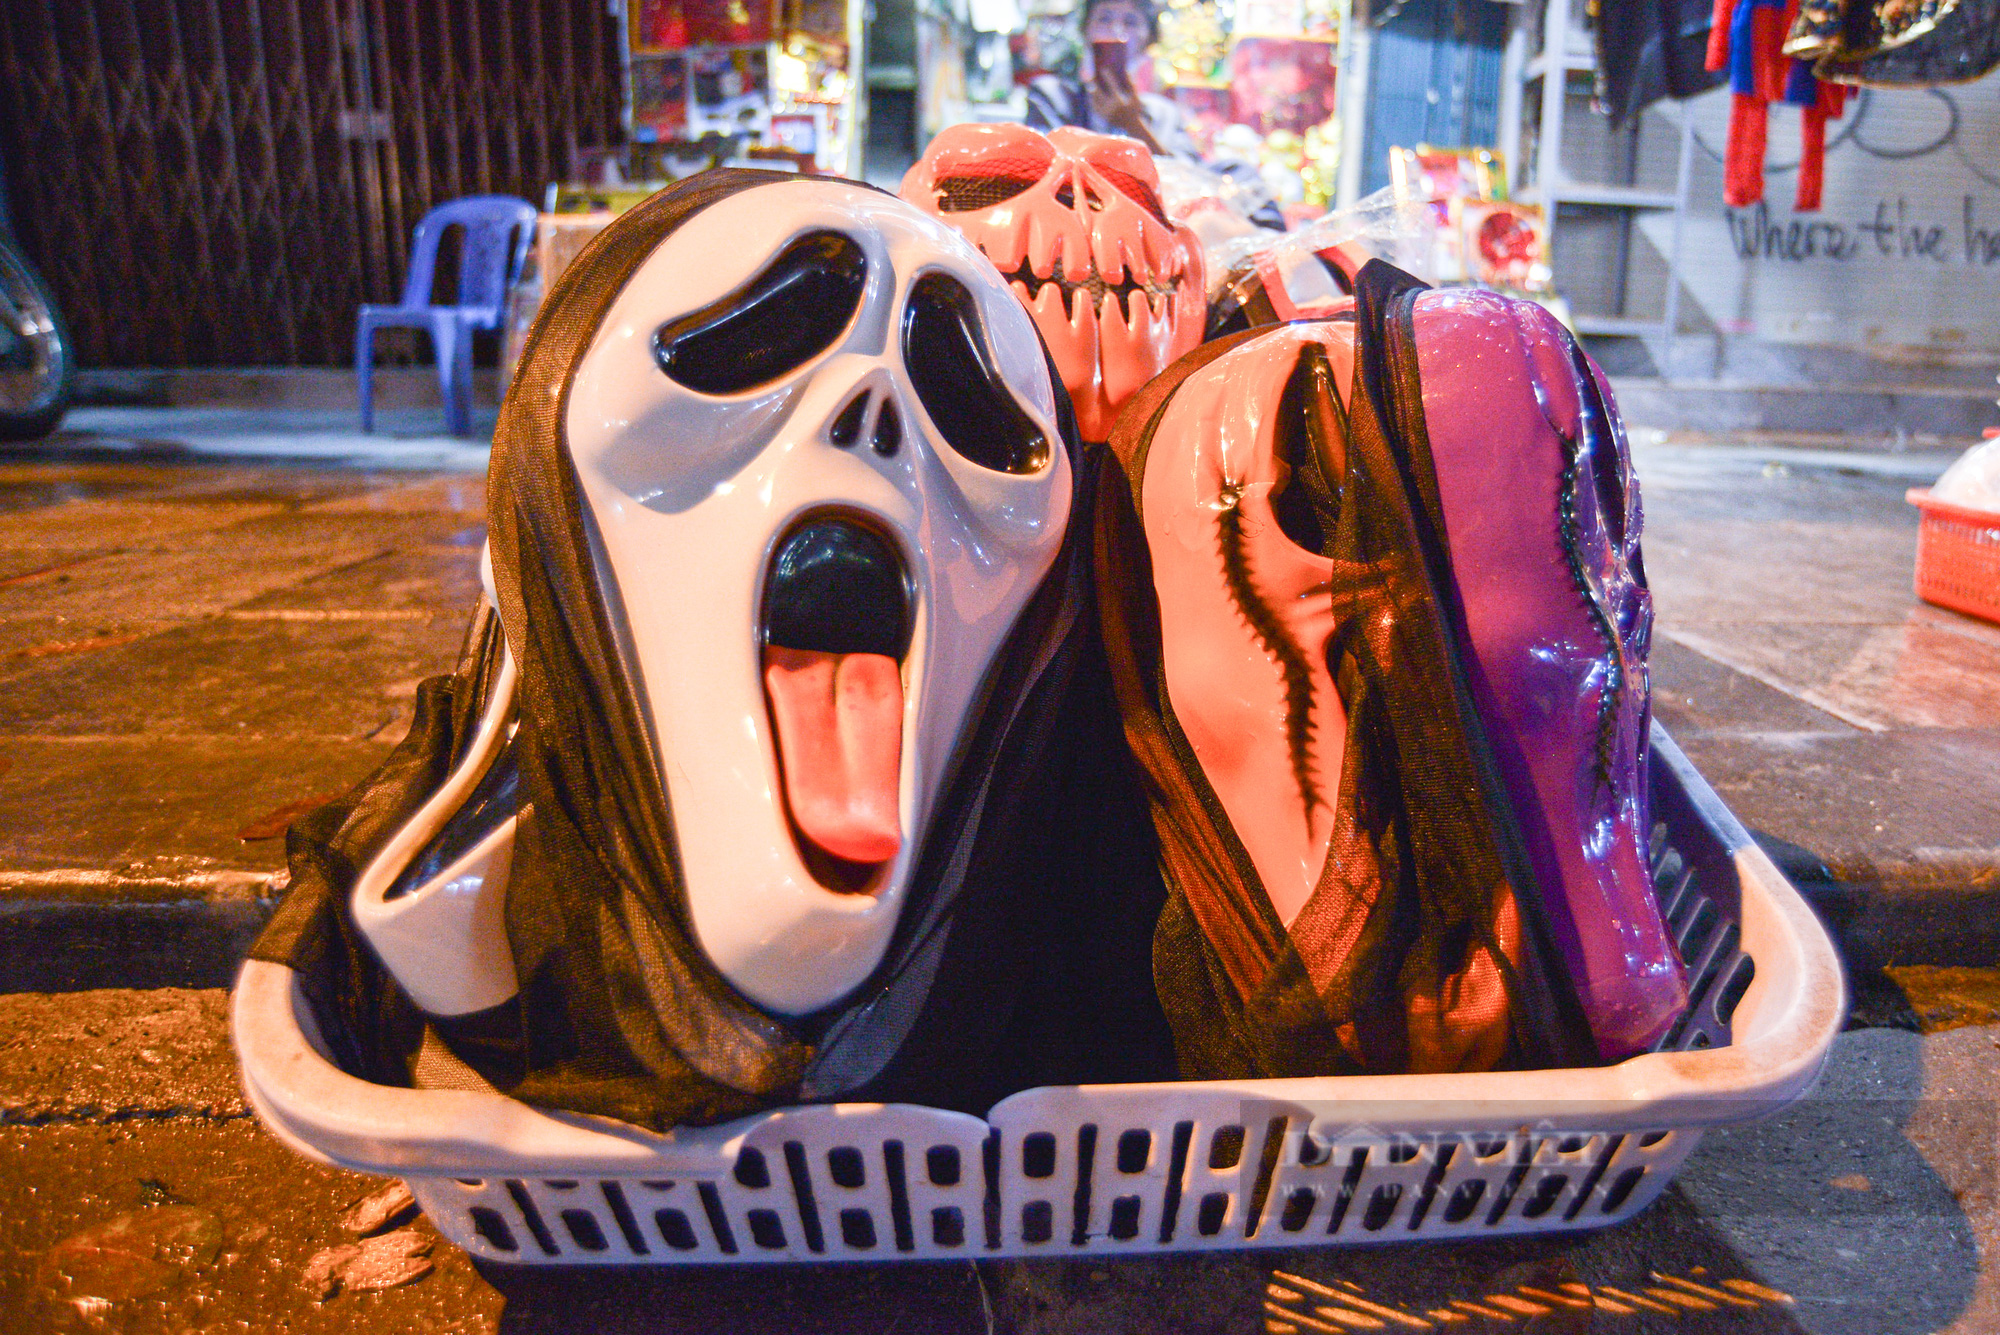 Khung cảnh khác lạ ở Hà Nội vào đêm Halloween: Mưa lạnh hắt hiu vắng bóng người - Ảnh 3.